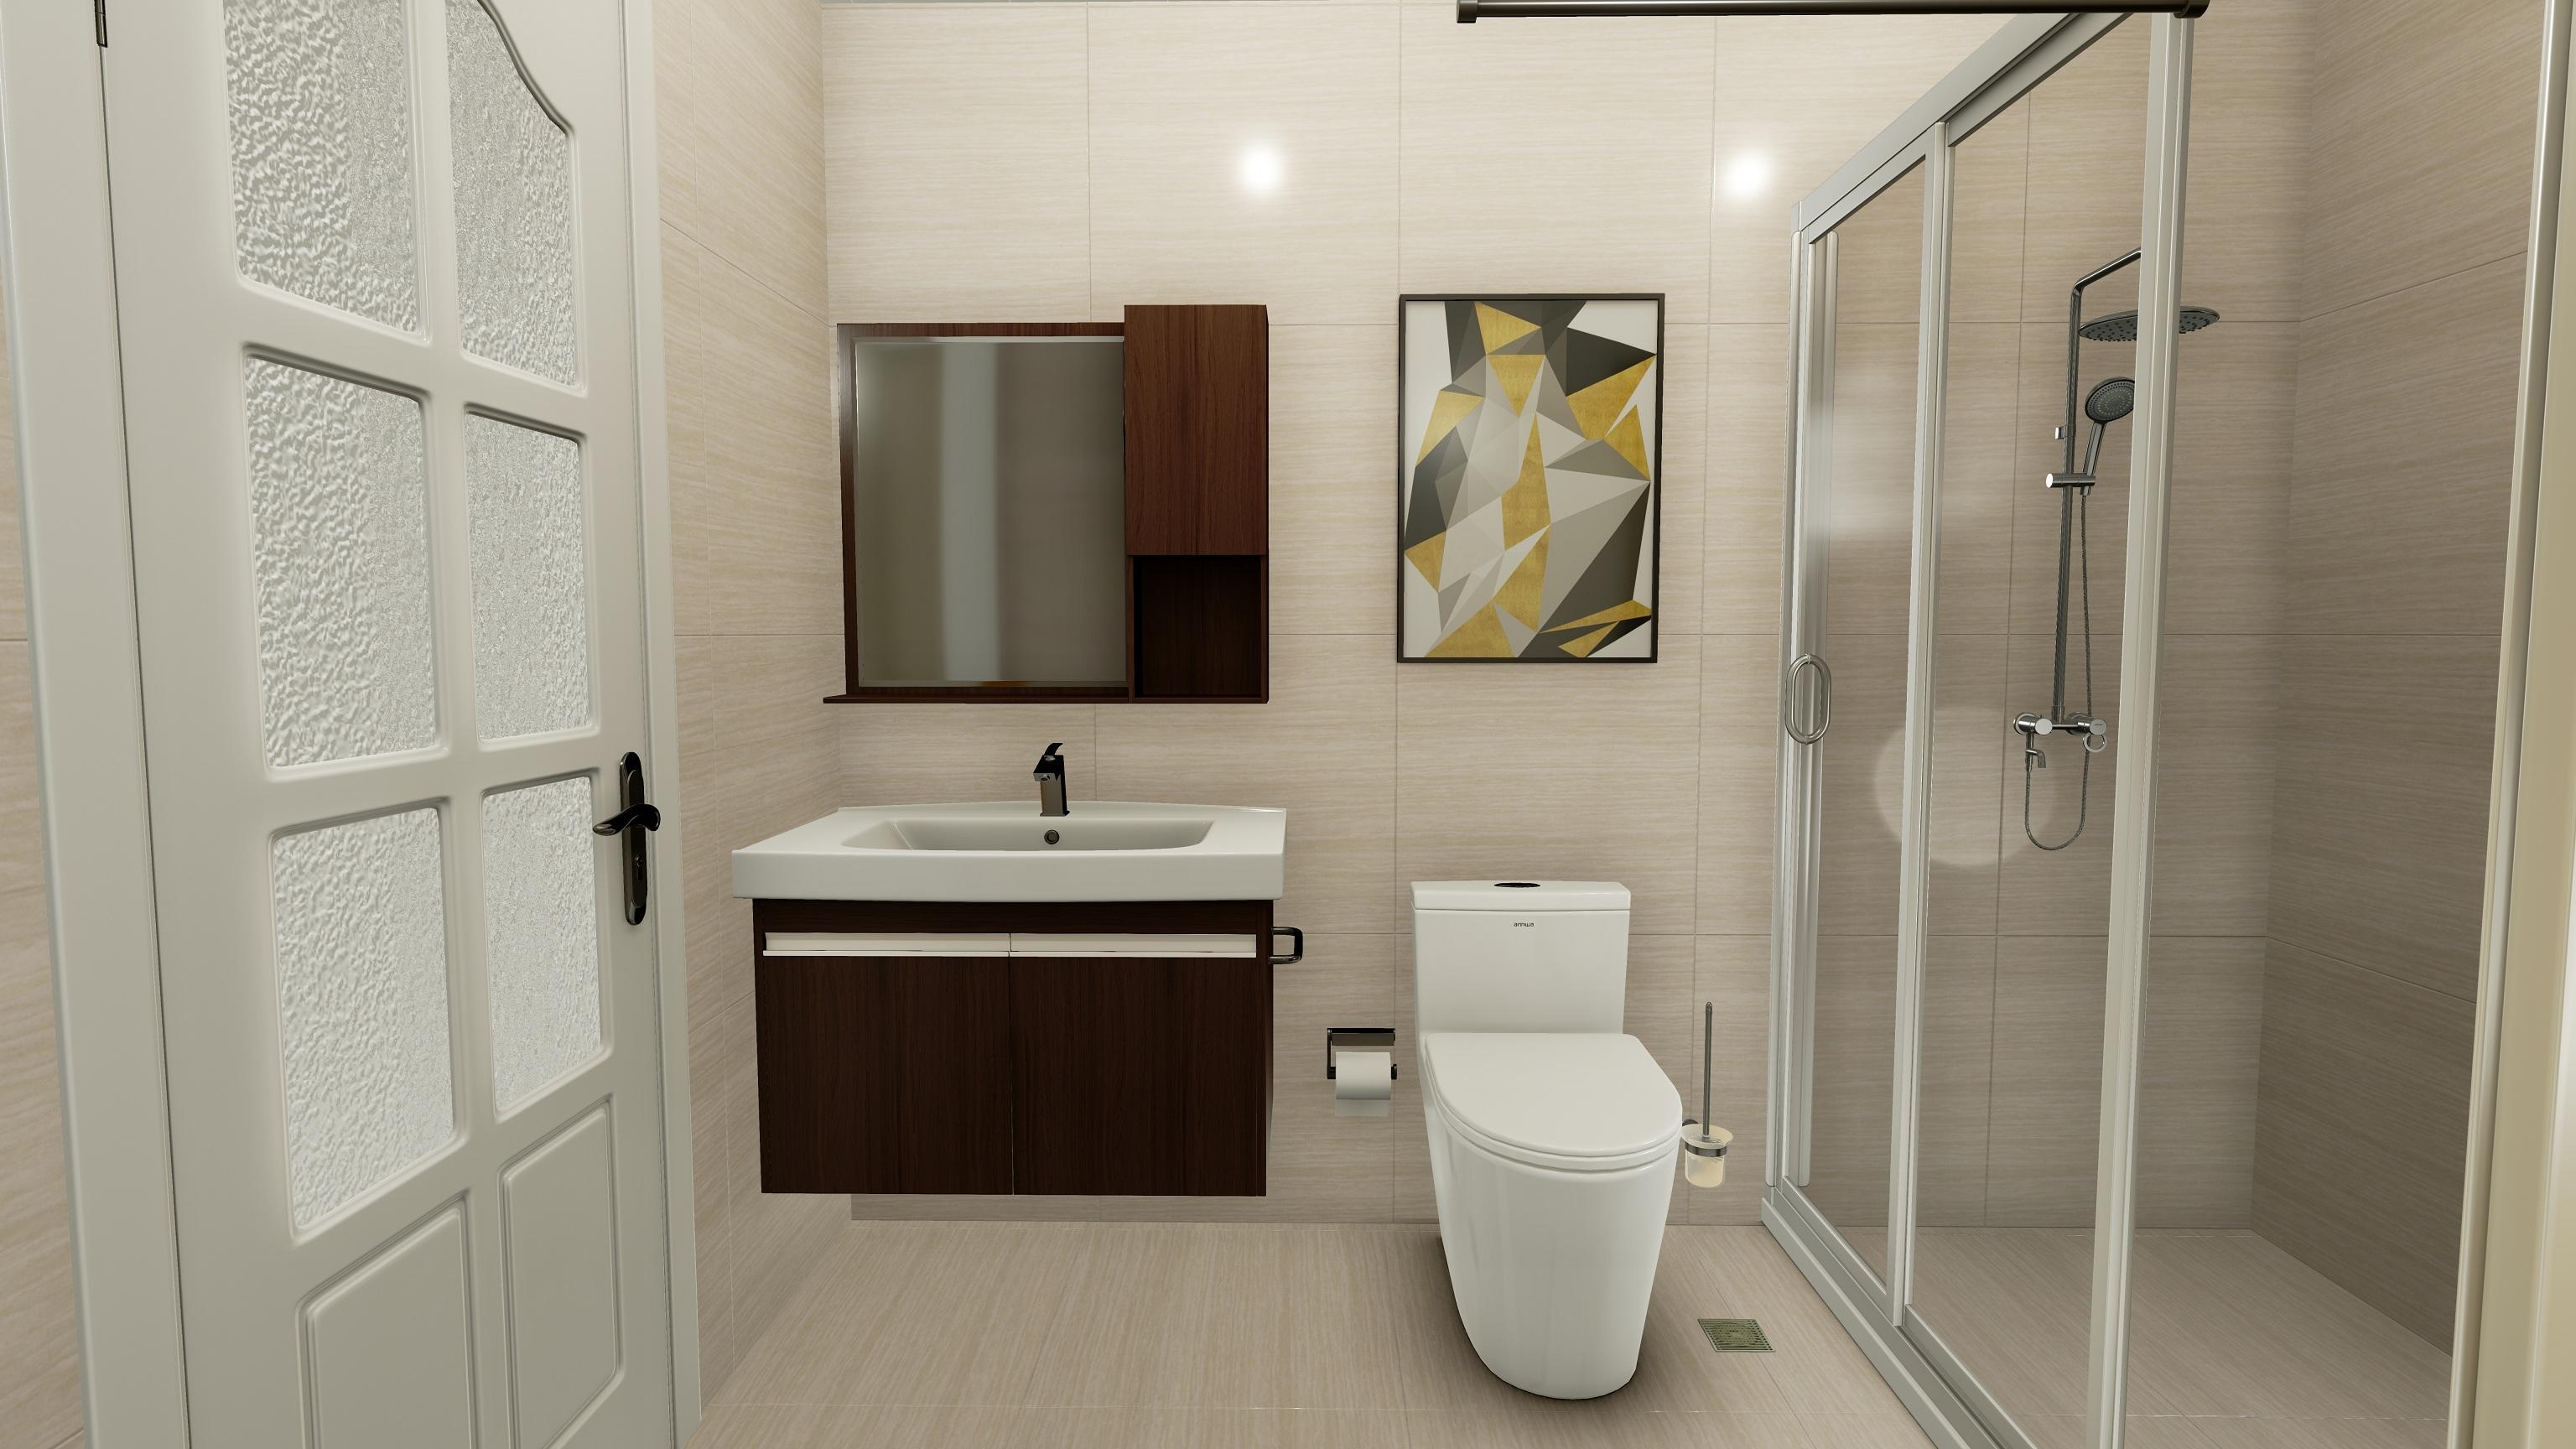 整体式卫生间打破传统单一的卫浴产品发展理念,将卫浴空间进行一体化